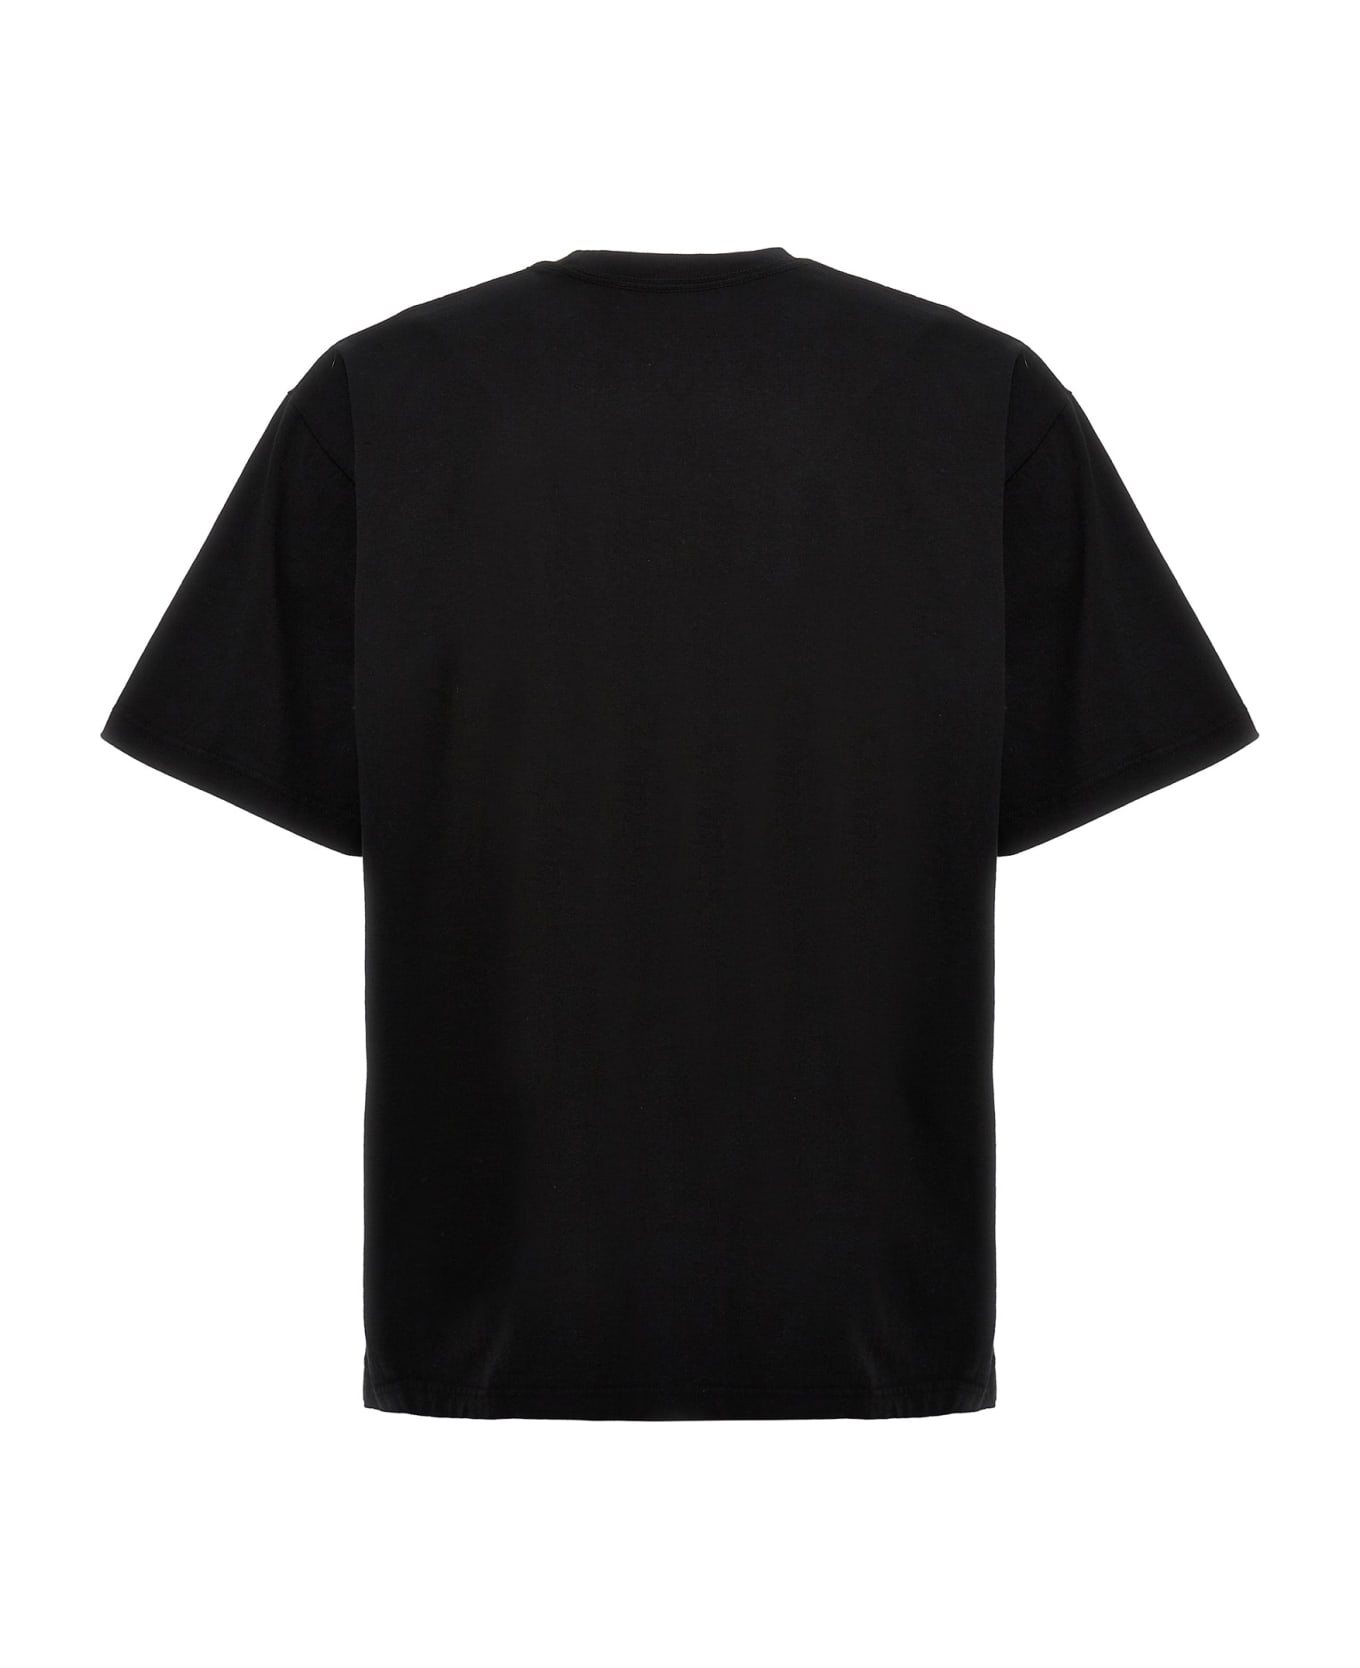 Yohji Yamamoto 'neighborhood' T-shirt - White/Black